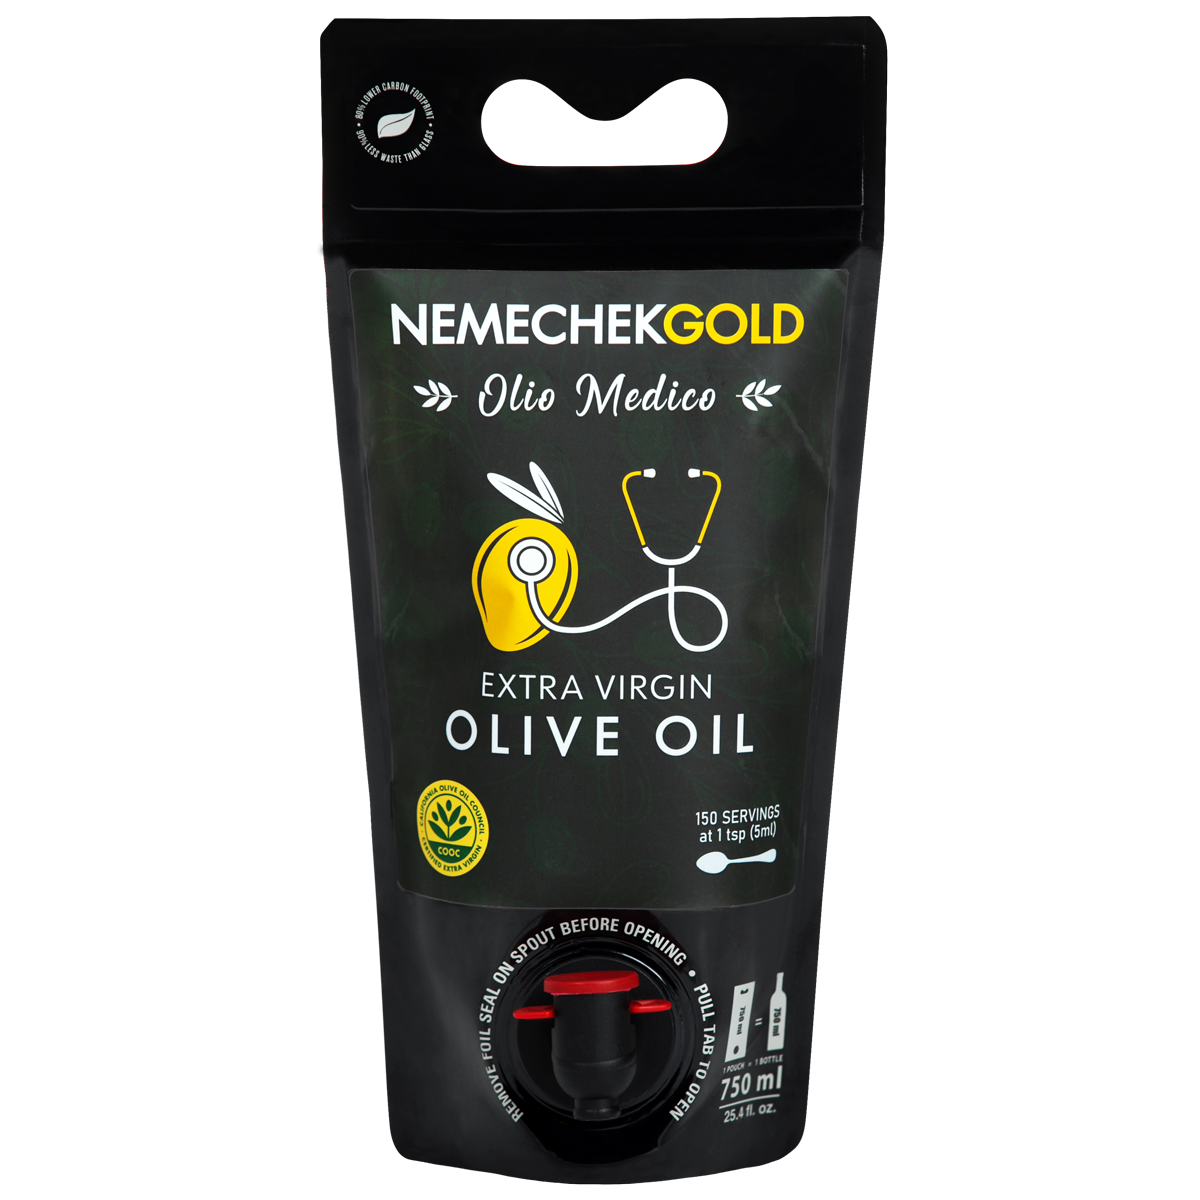 Olio Medico Extra Virgin Olive Oil, 750 ml - Buy 2, Save 25%